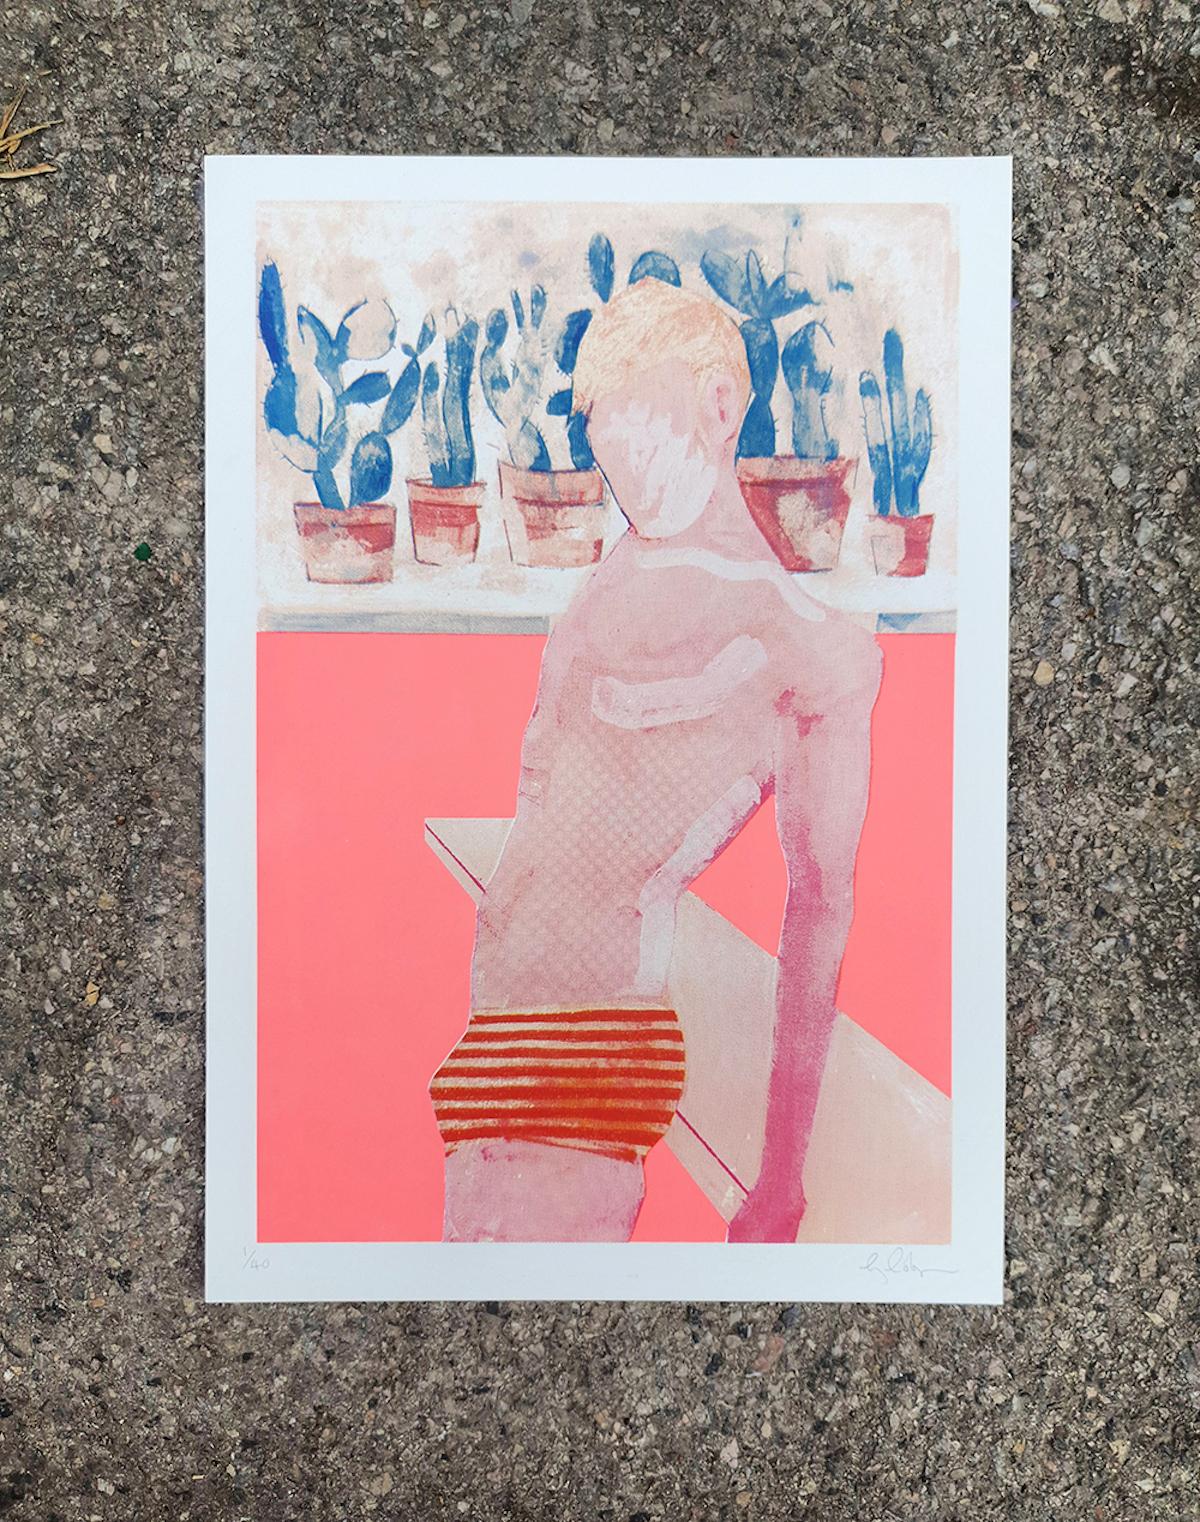 Pool boy - Fluro von Gavin Dobson [2021]
Limitierte Auflage
CMYK-Siebdruck
Signiert vom Künstler
Ausgabe Nummer 40
Bildgröße: H:50 cm x B:35 cm
Gesamtgröße des ungerahmten Werks: H:50 cm x B:35 cm x T:0,1cm
Ungerahmt verkauft

Bitte beachten Sie,